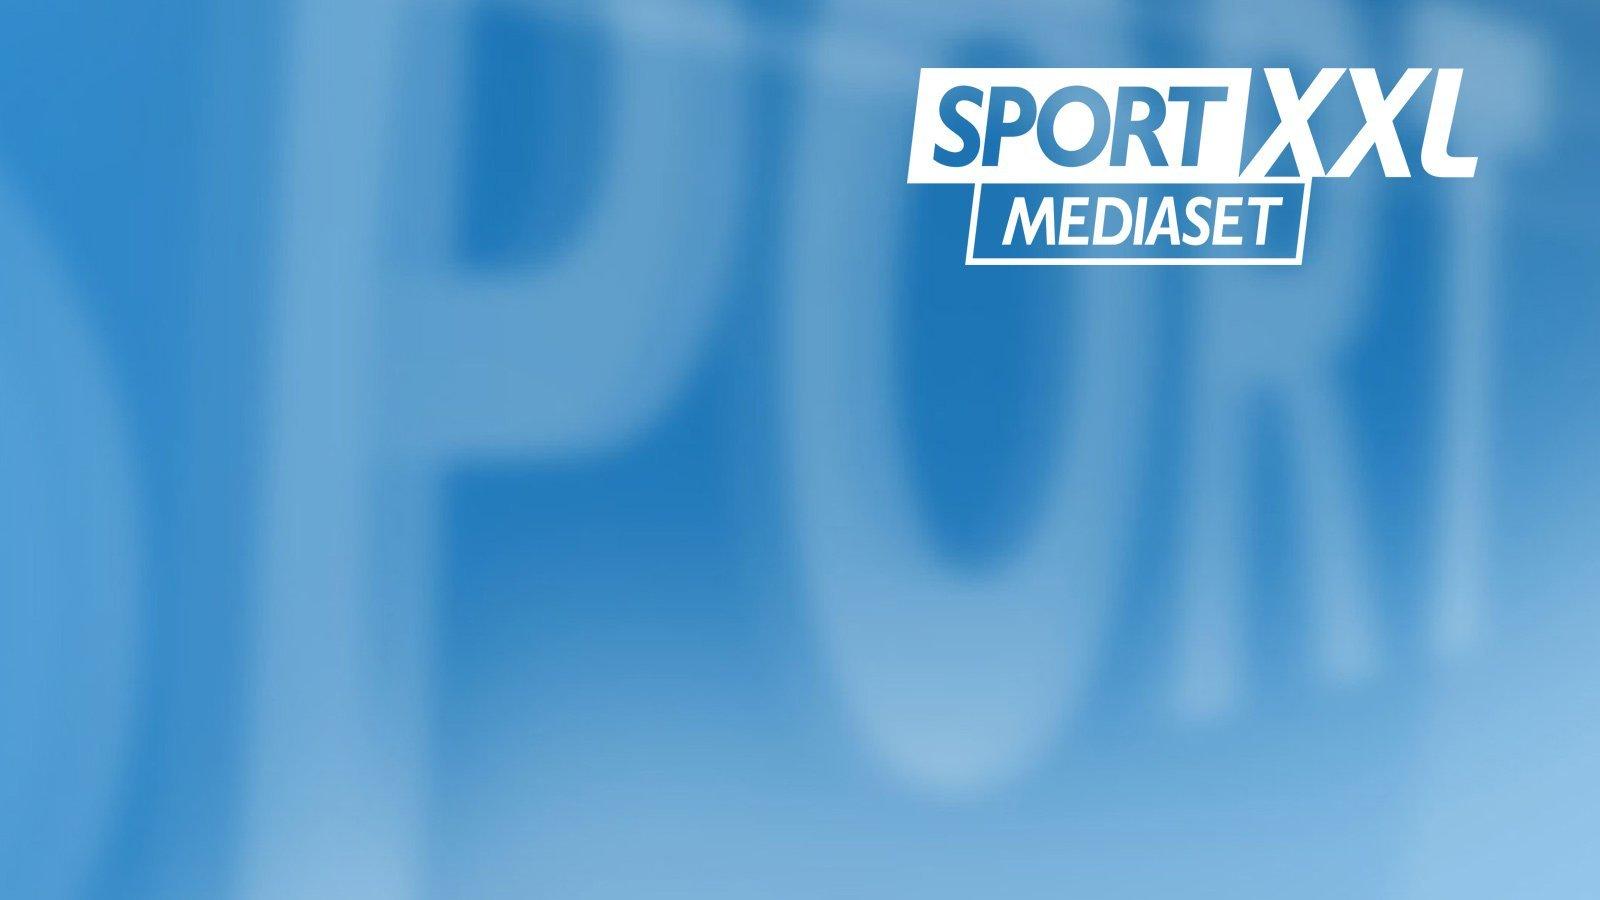 Sport Mediaset XXL